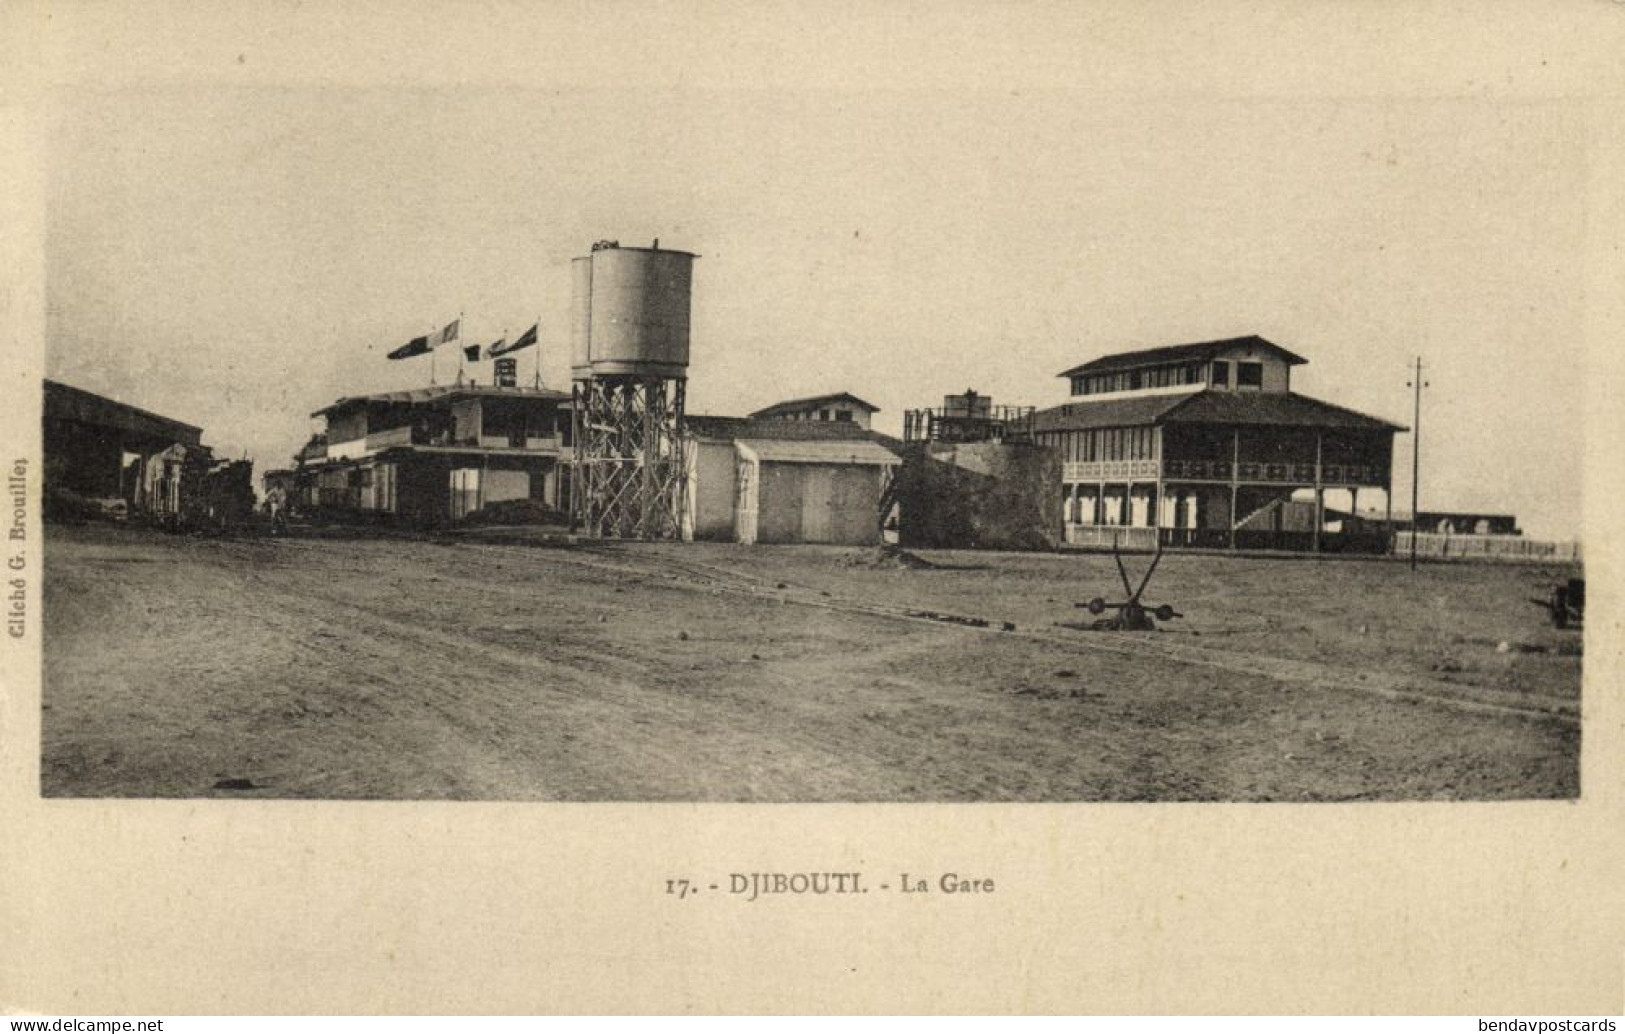 Djibouti, DJIBOUTI, La Gare, Railway Station (1920s) Postcard - Djibouti